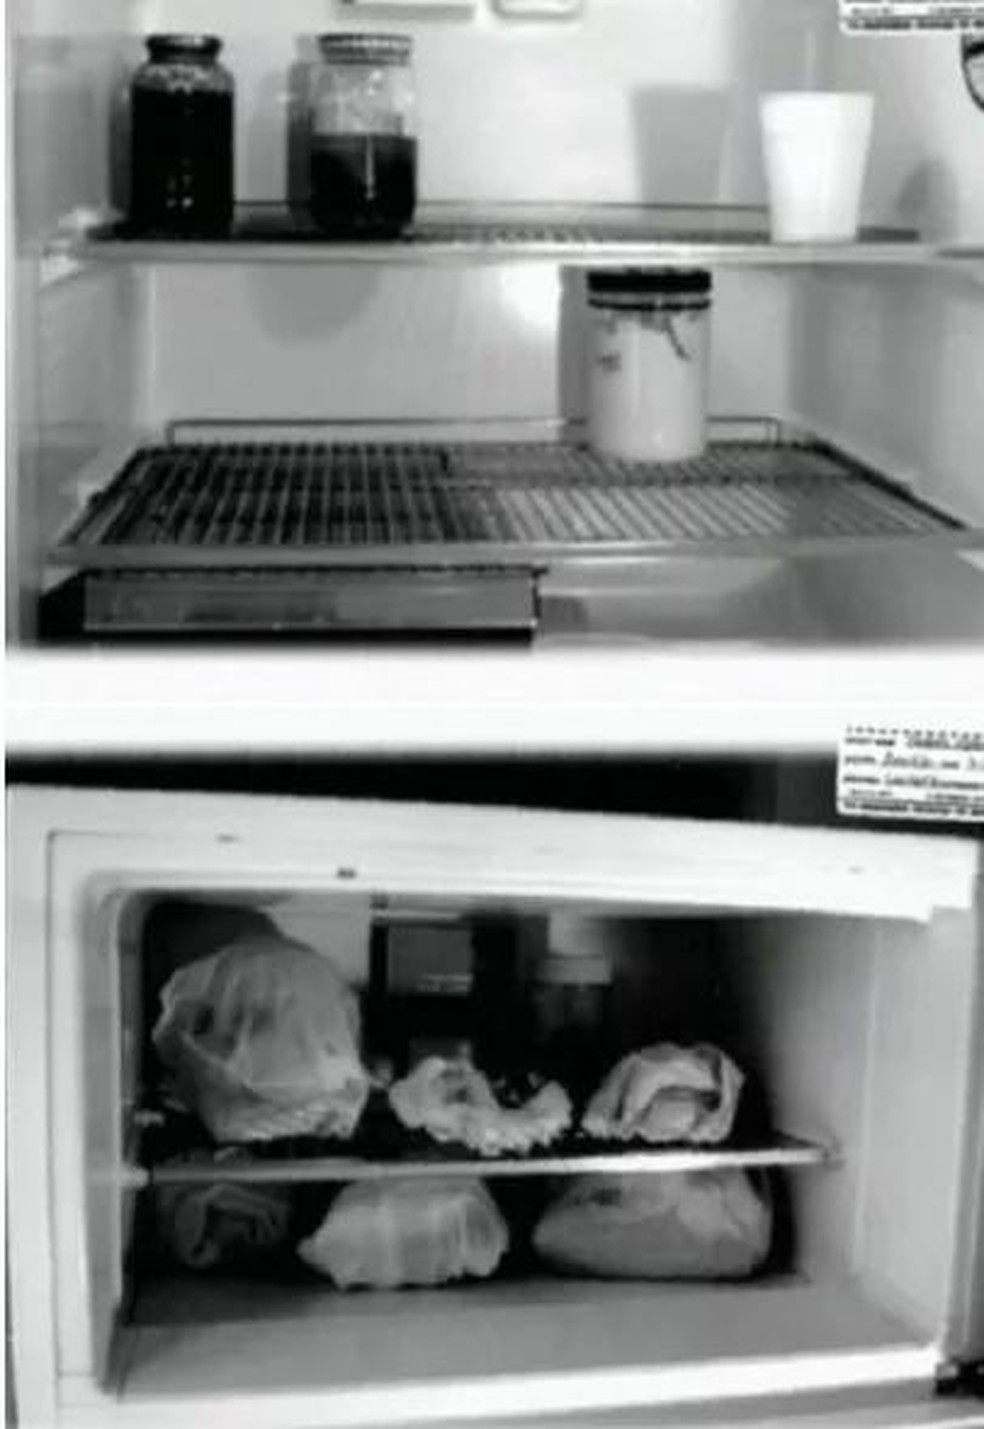 Restos mortais encontrados na geladeira de Dahmer, em 1991 (Foto: Departamento de Polícia de Milwaukee/FBI) — Foto: Galileu